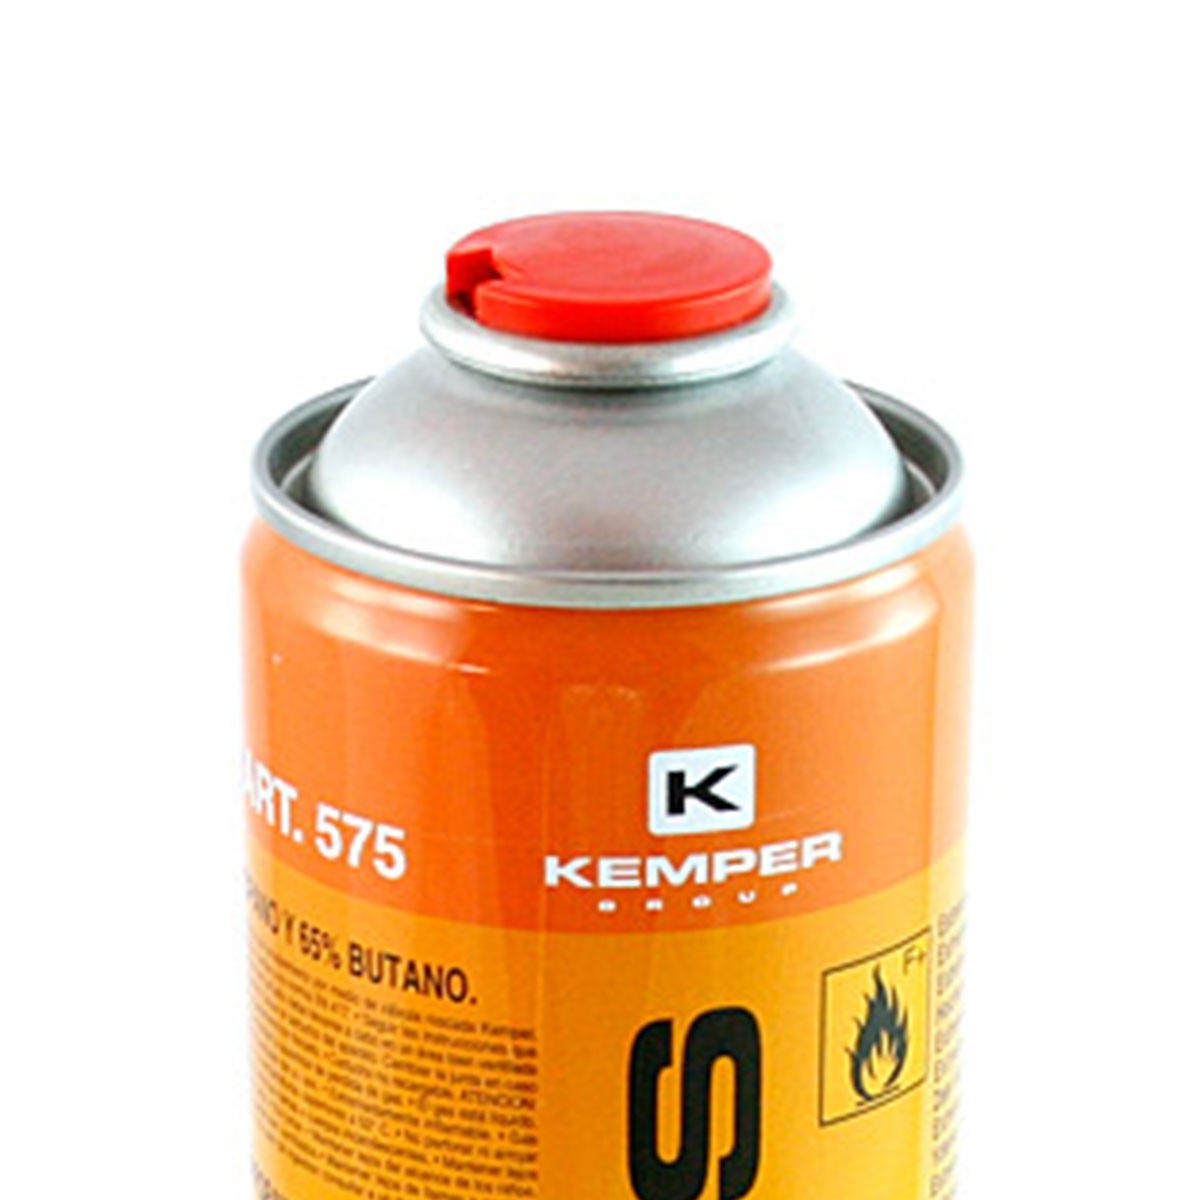 Cartouches gaz 330g Pack de 6 Bouteilles Butane propane 600ml Kemper Bonbonne gaz universelle valve 7/16 3